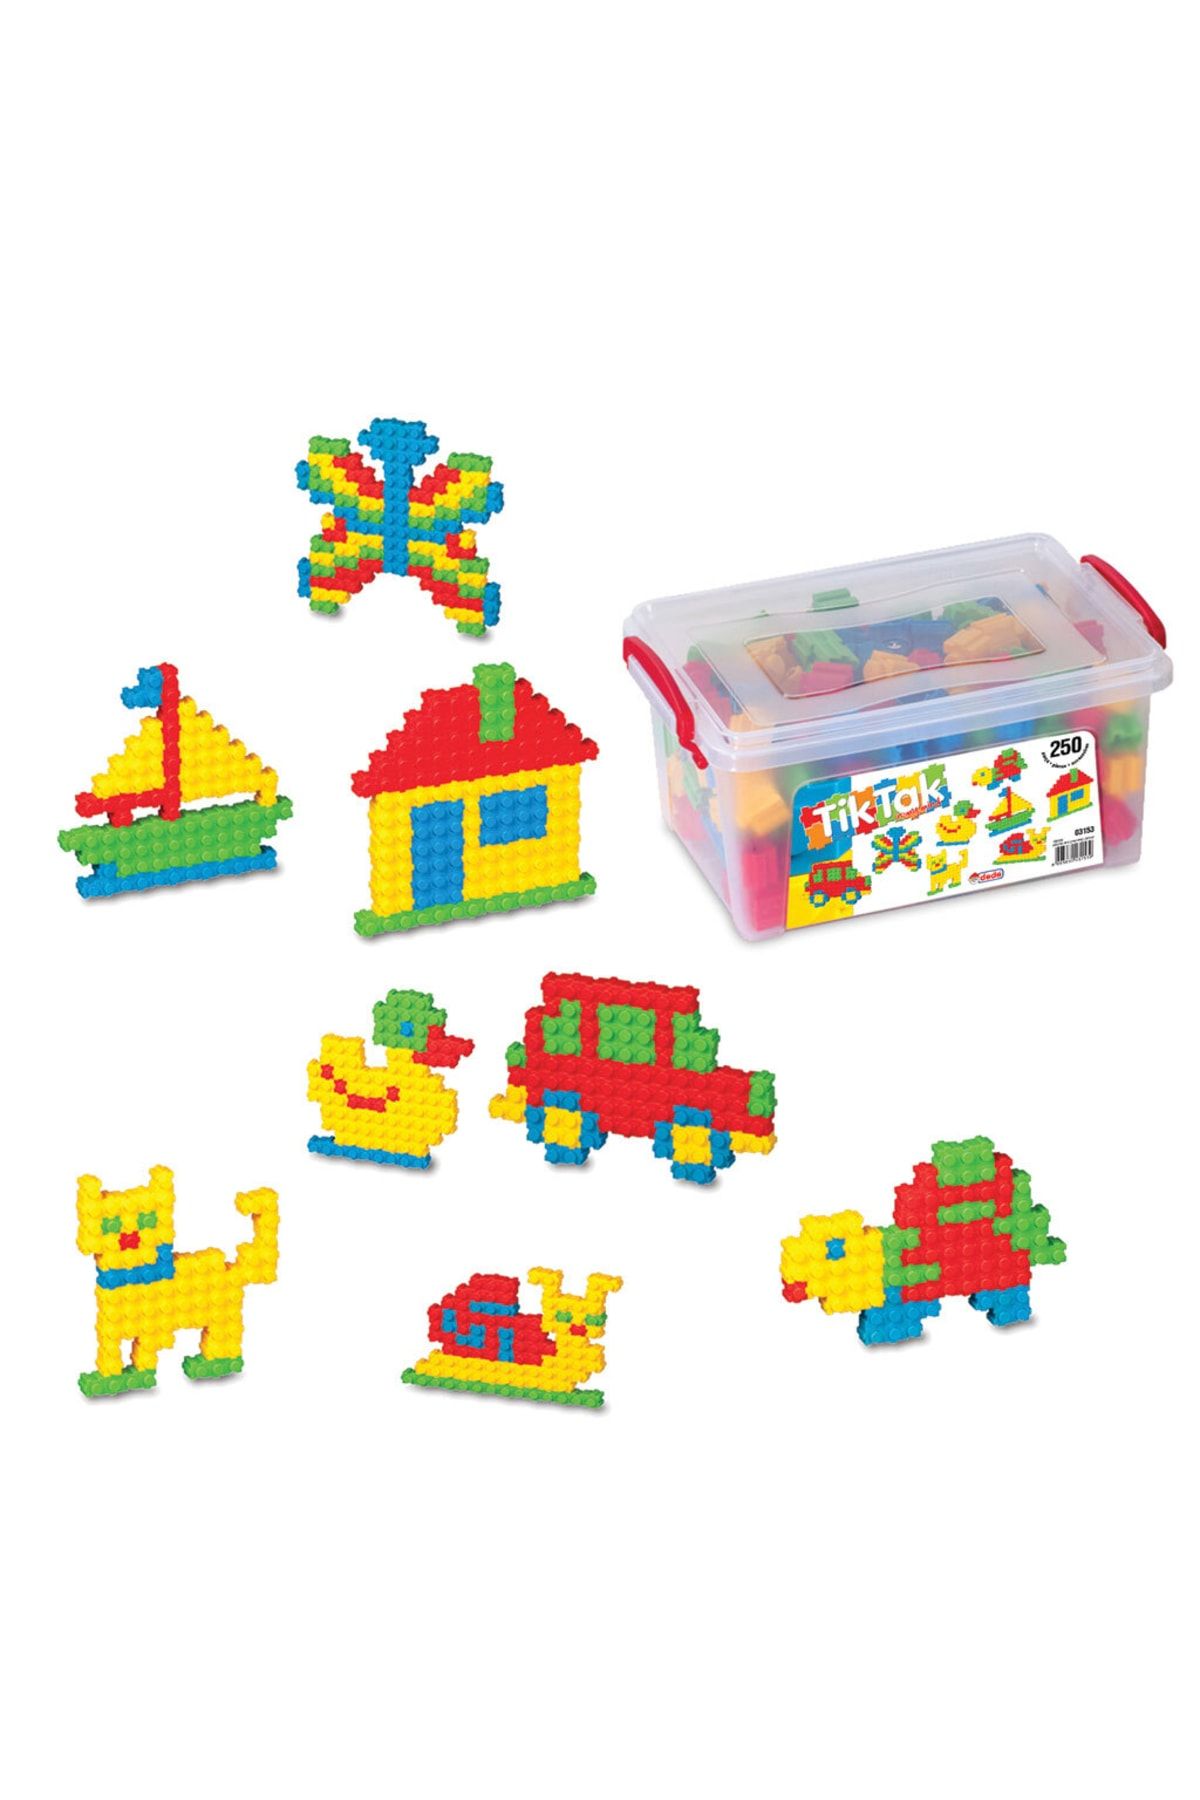 Doğan Oyuncak Dünyası Tik Tak Lego Küçük (250 Parça) - Tik Tak Lego - Lego Oyuncaklar - Yapı Oyuncakları - Tik Tak Puzzle